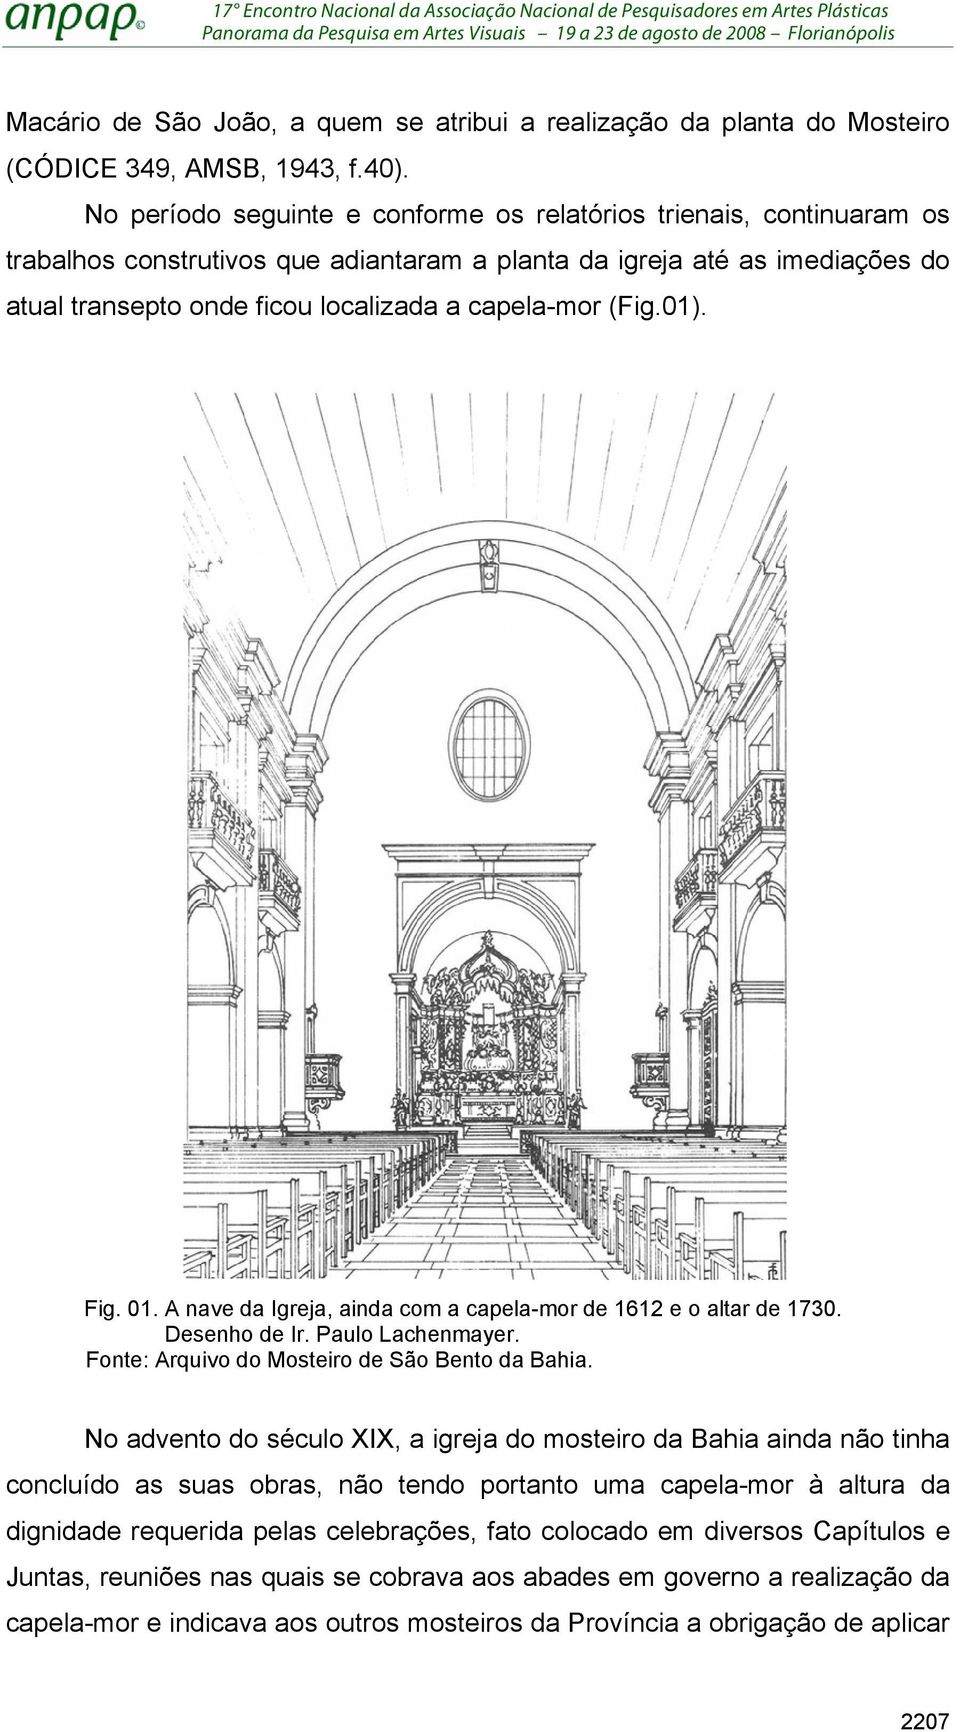 (Fig.01). Fig. 01. A nave da Igreja, ainda com a capela-mor de 1612 e o altar de 1730. Desenho de Ir. Paulo Lachenmayer. Fonte: Arquivo do Mosteiro de São Bento da Bahia.